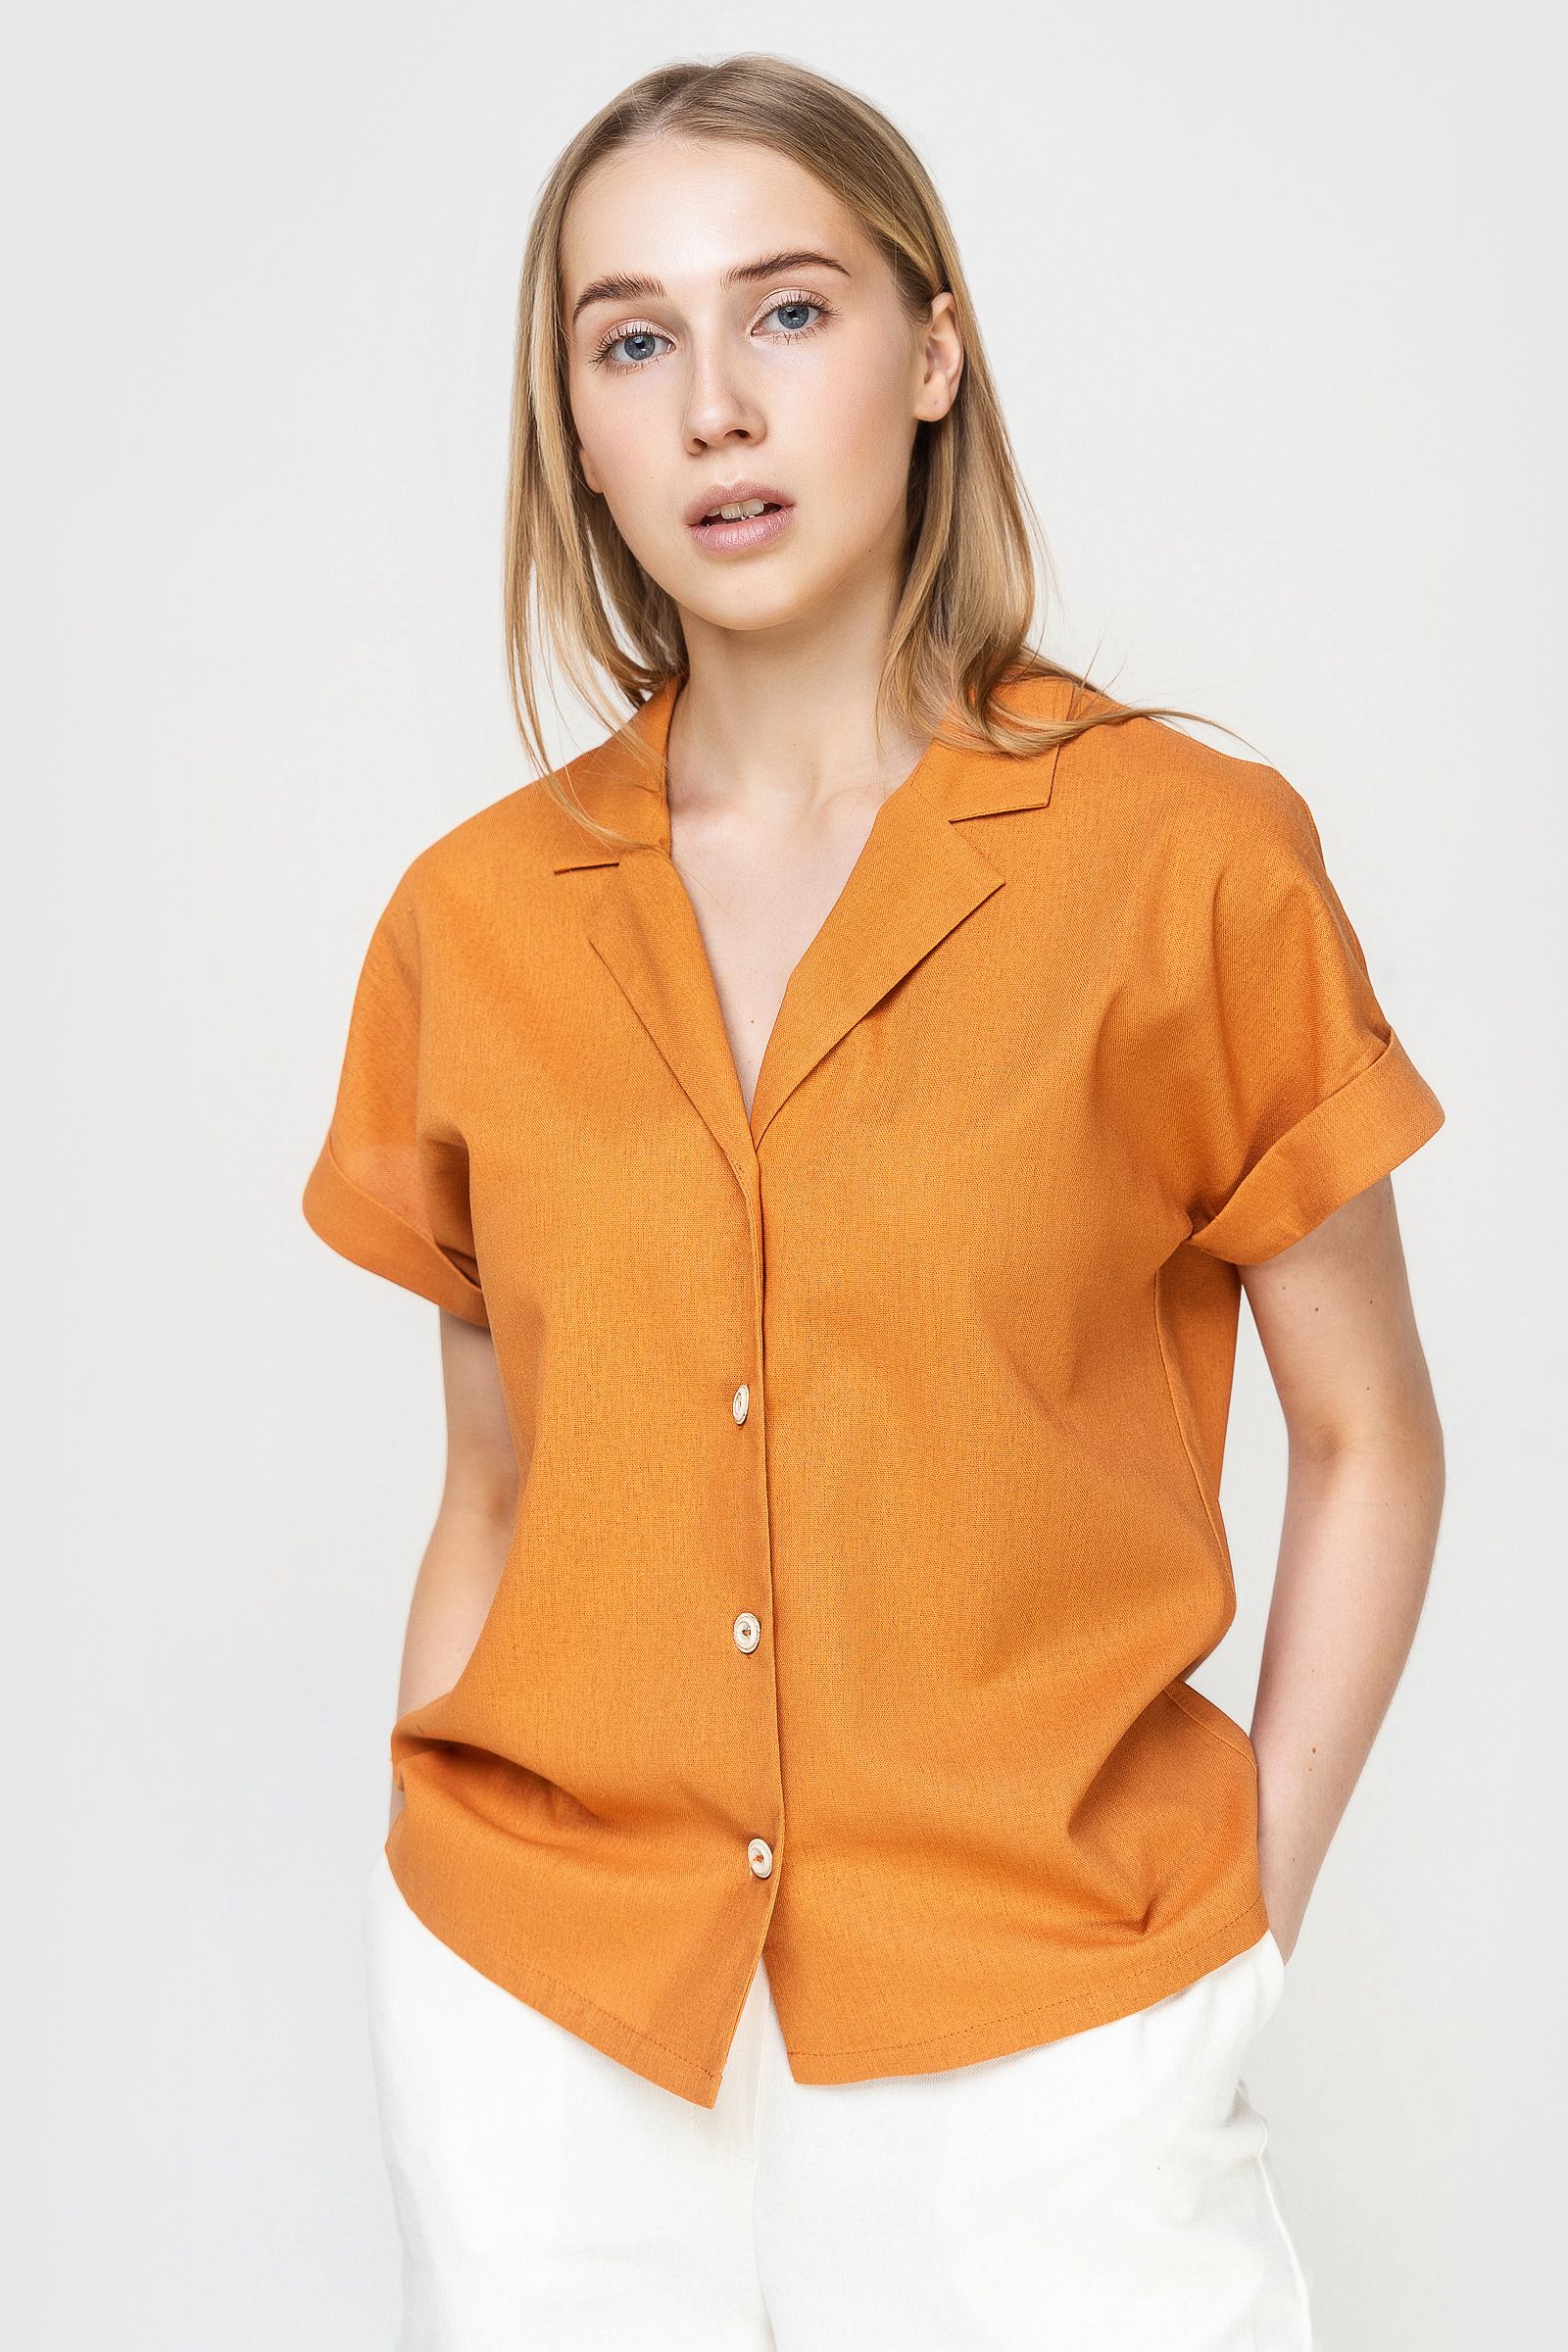 Рубашка женская AM One 6019/2 оранжевая 54 RU